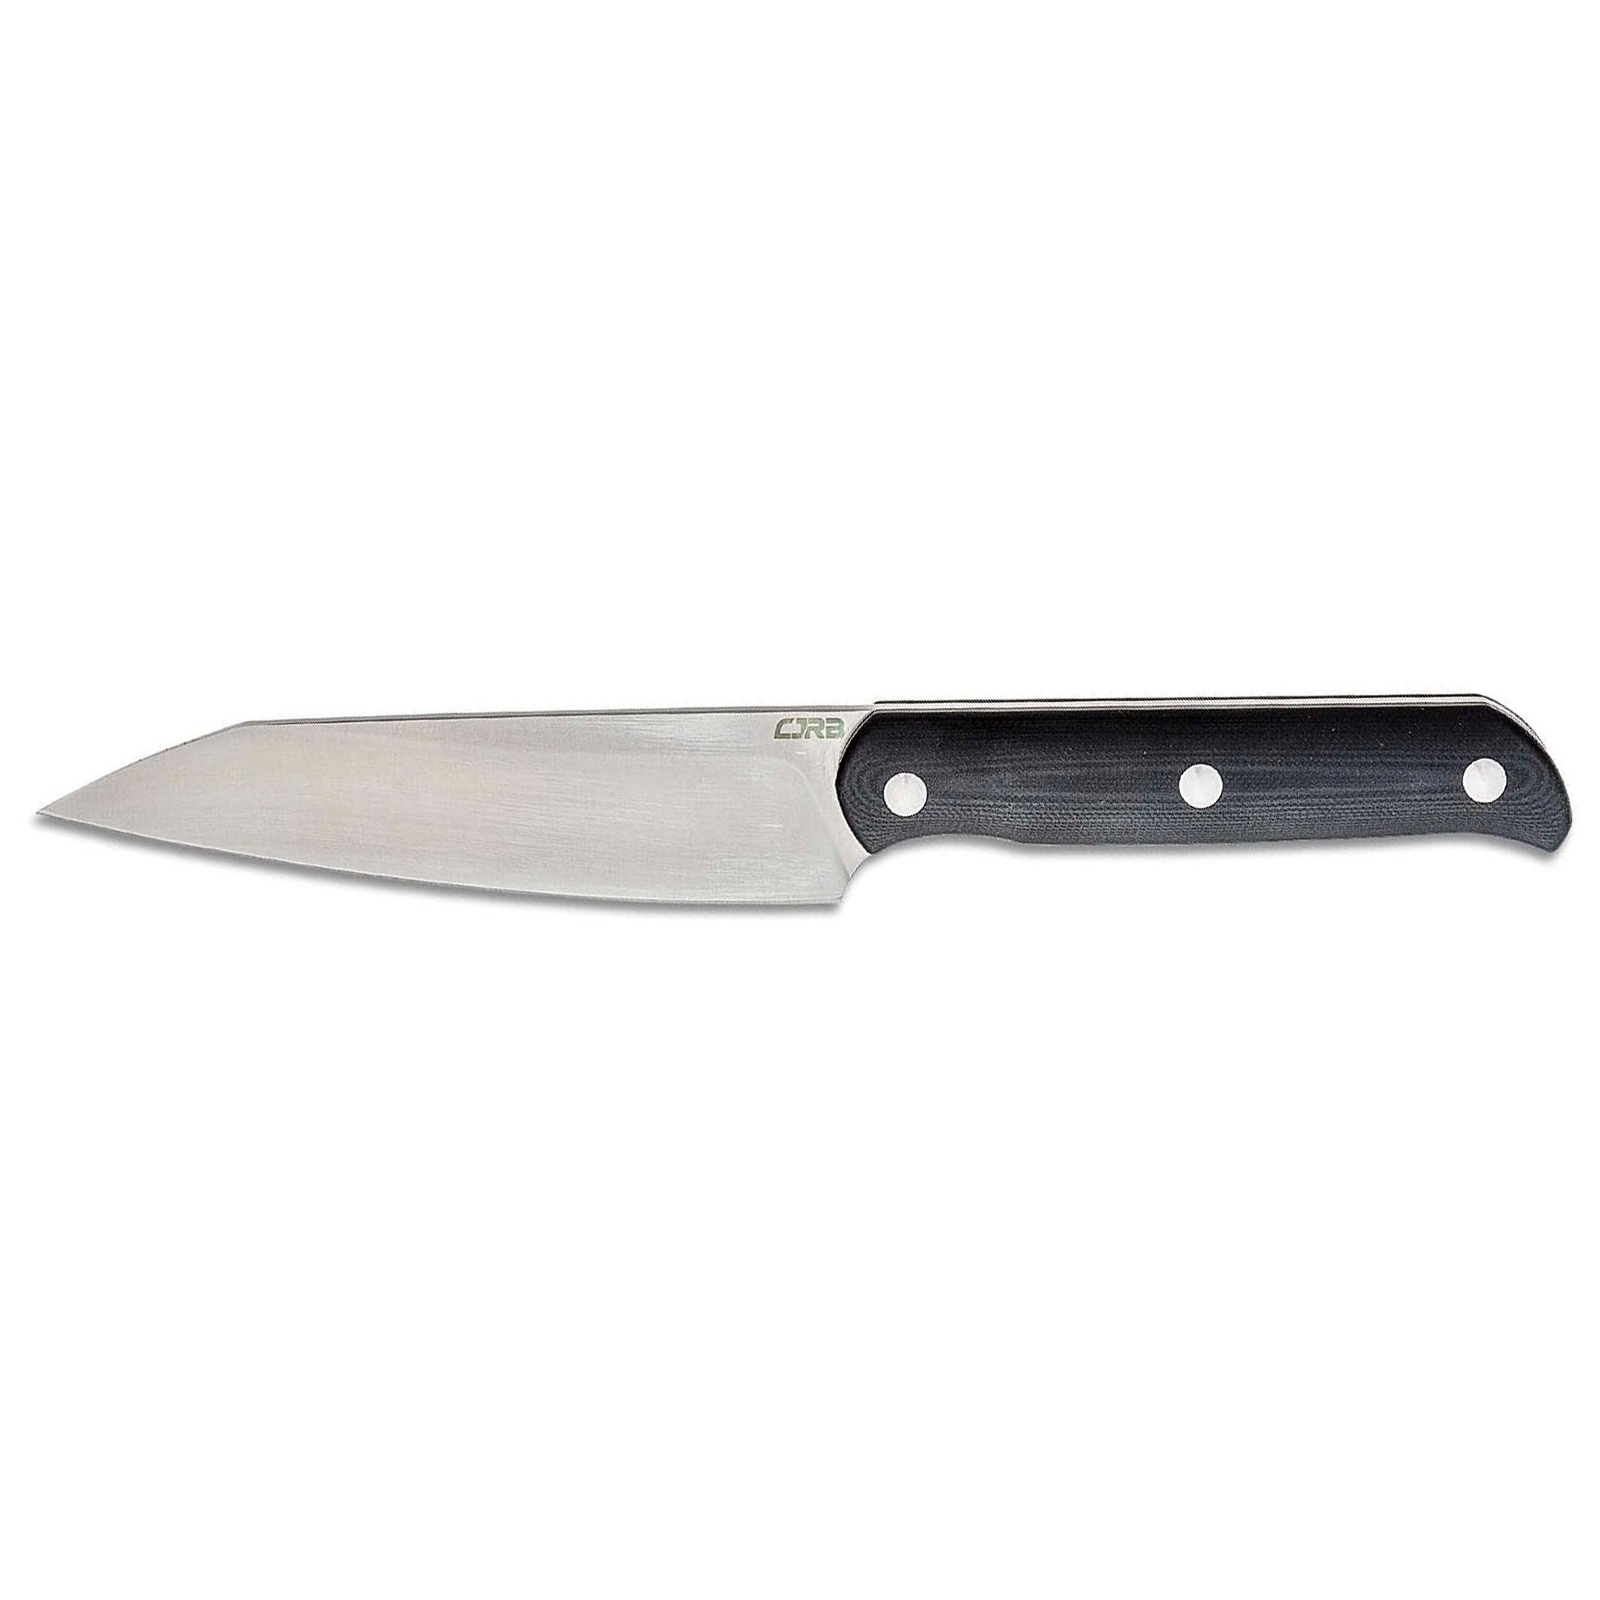 Нож CJRB Silax BB Olive (J1921B-BGN)